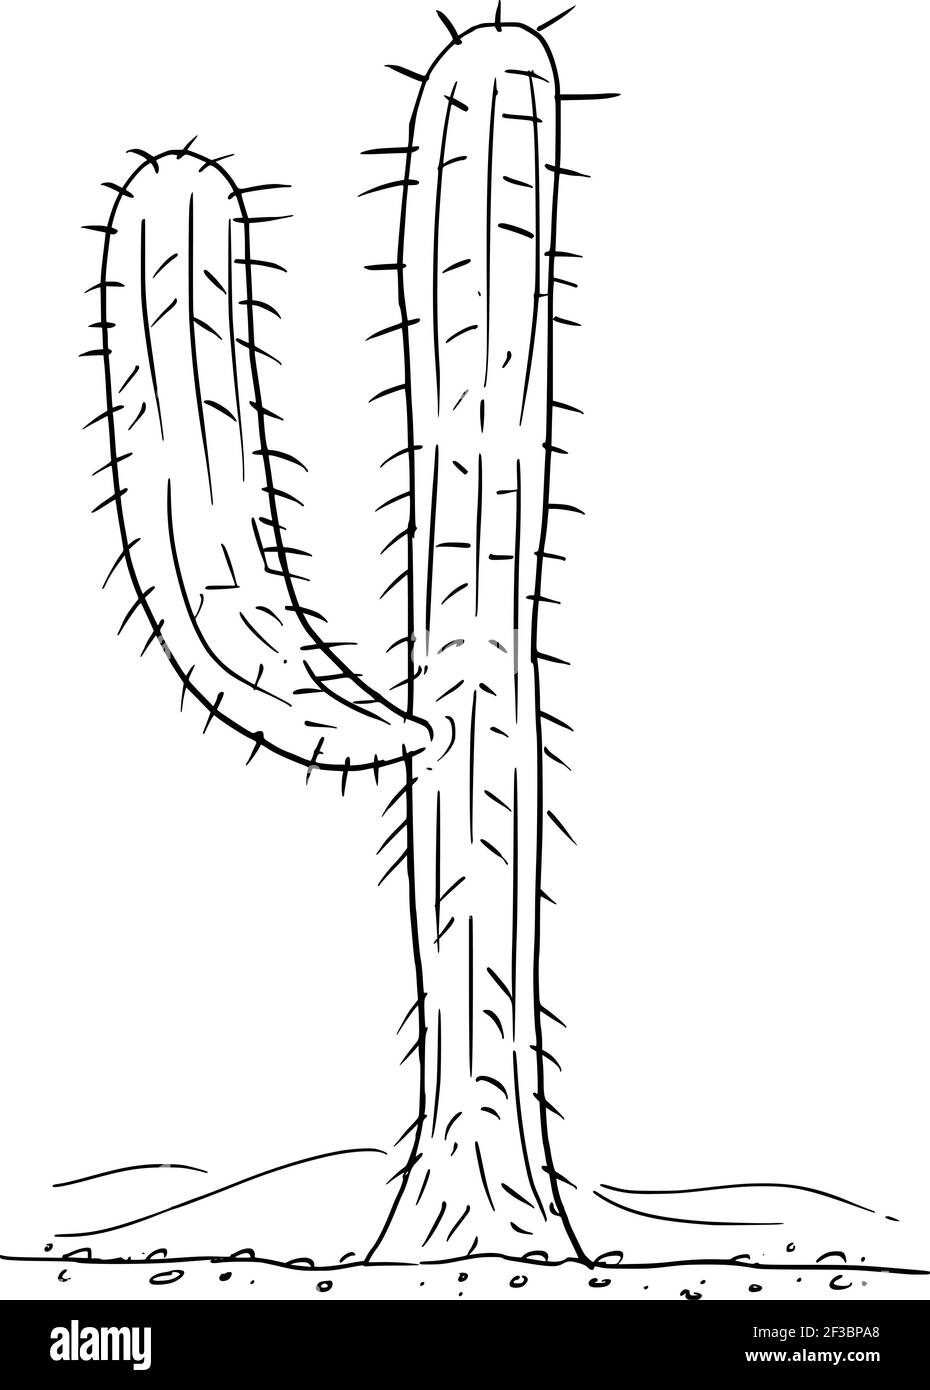 Disegno di cactus immagini e fotografie stock ad alta risoluzione - Alamy